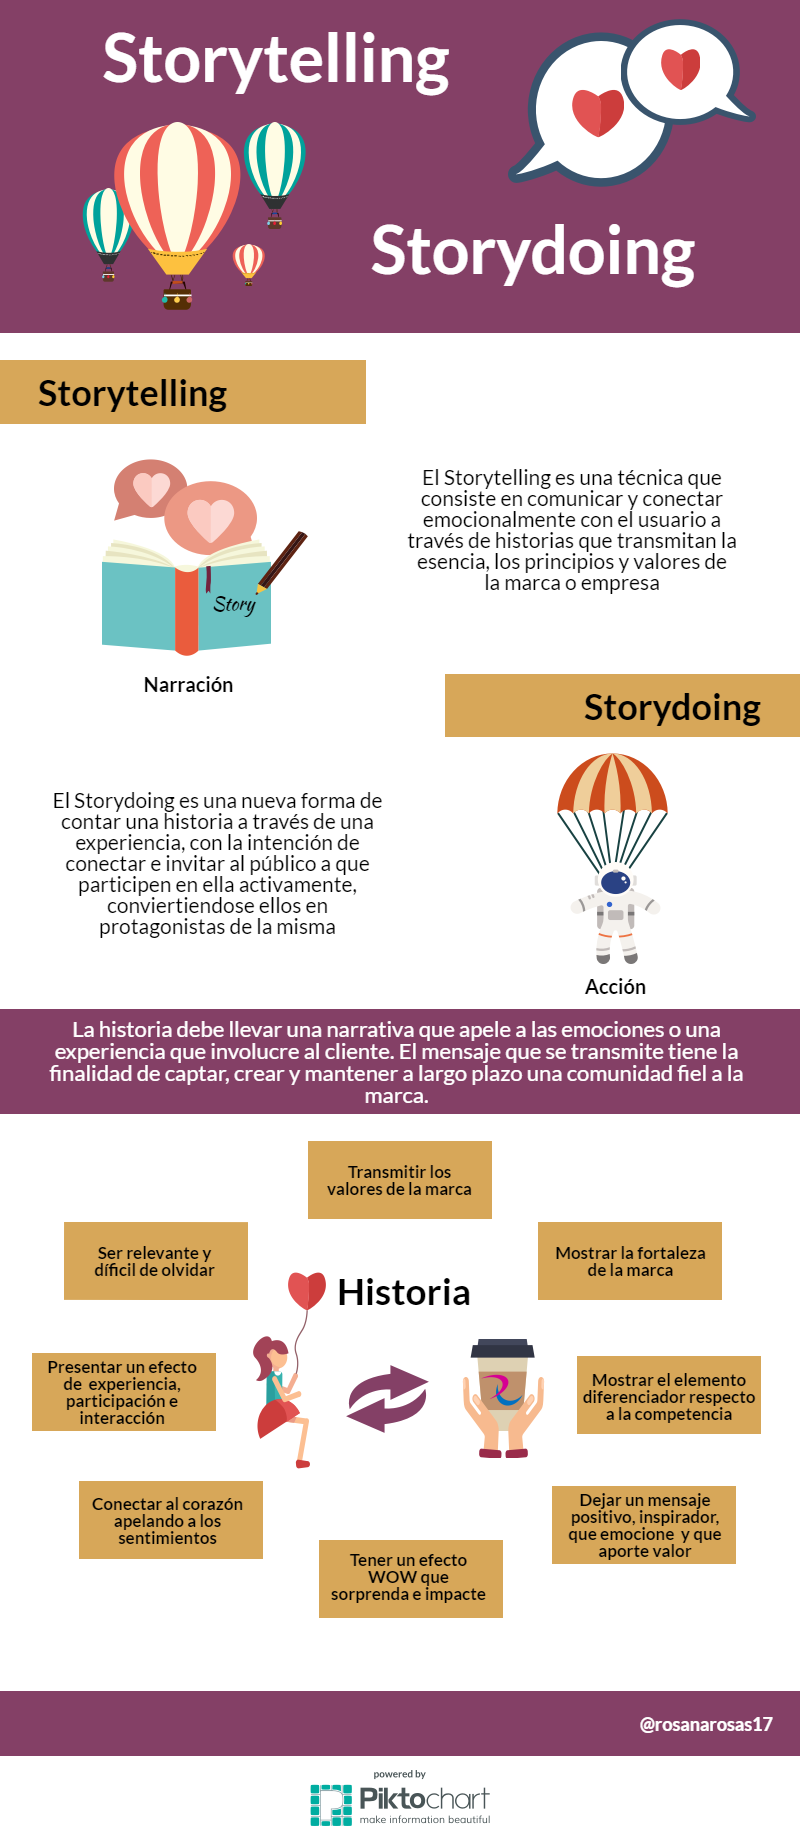 Storytelling vs Storydoing